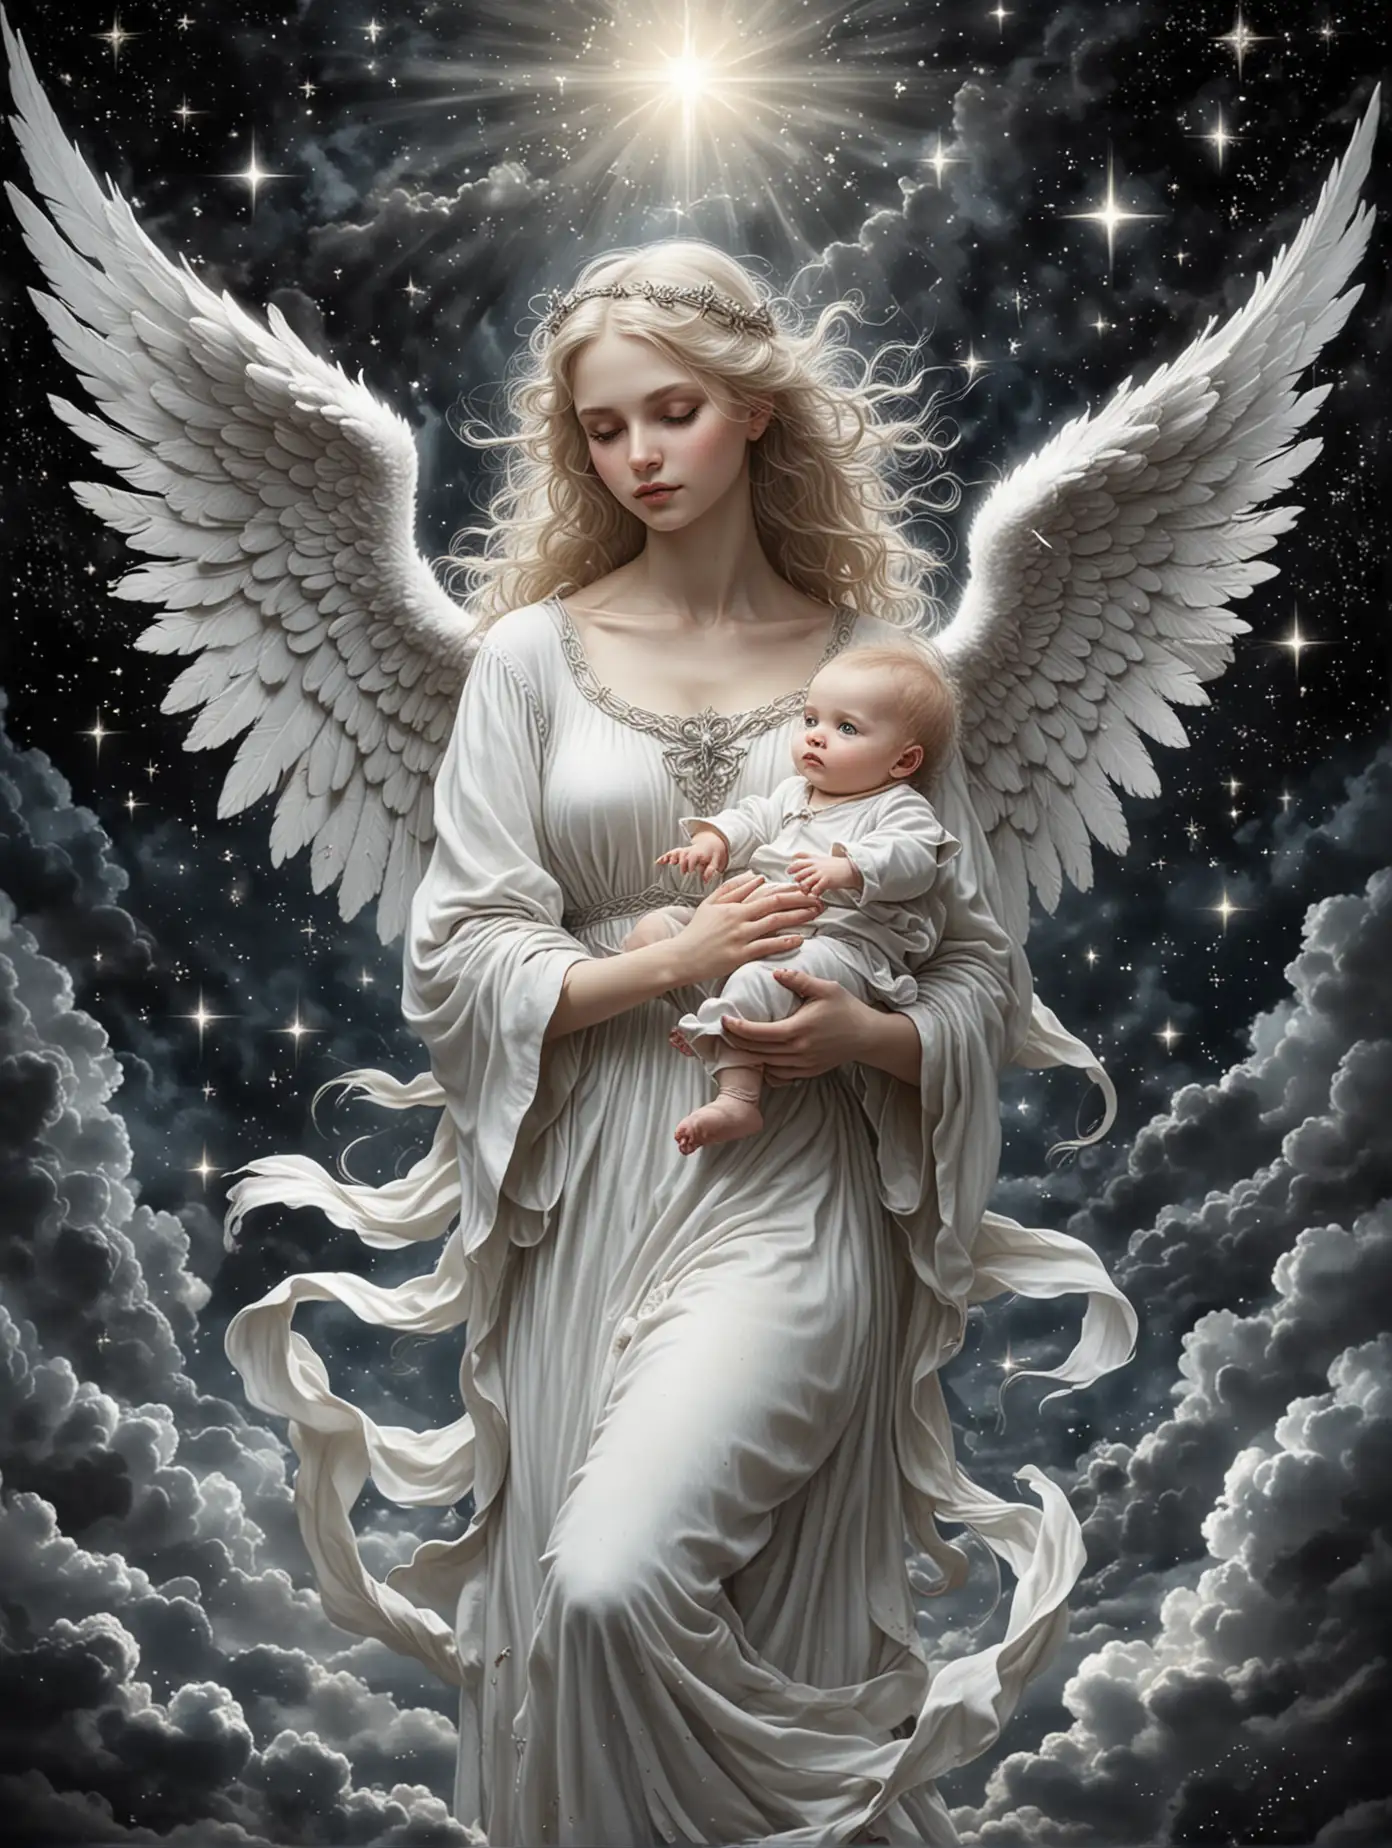 белый ангел в небе держит младенца , светят звезды, готический стиль